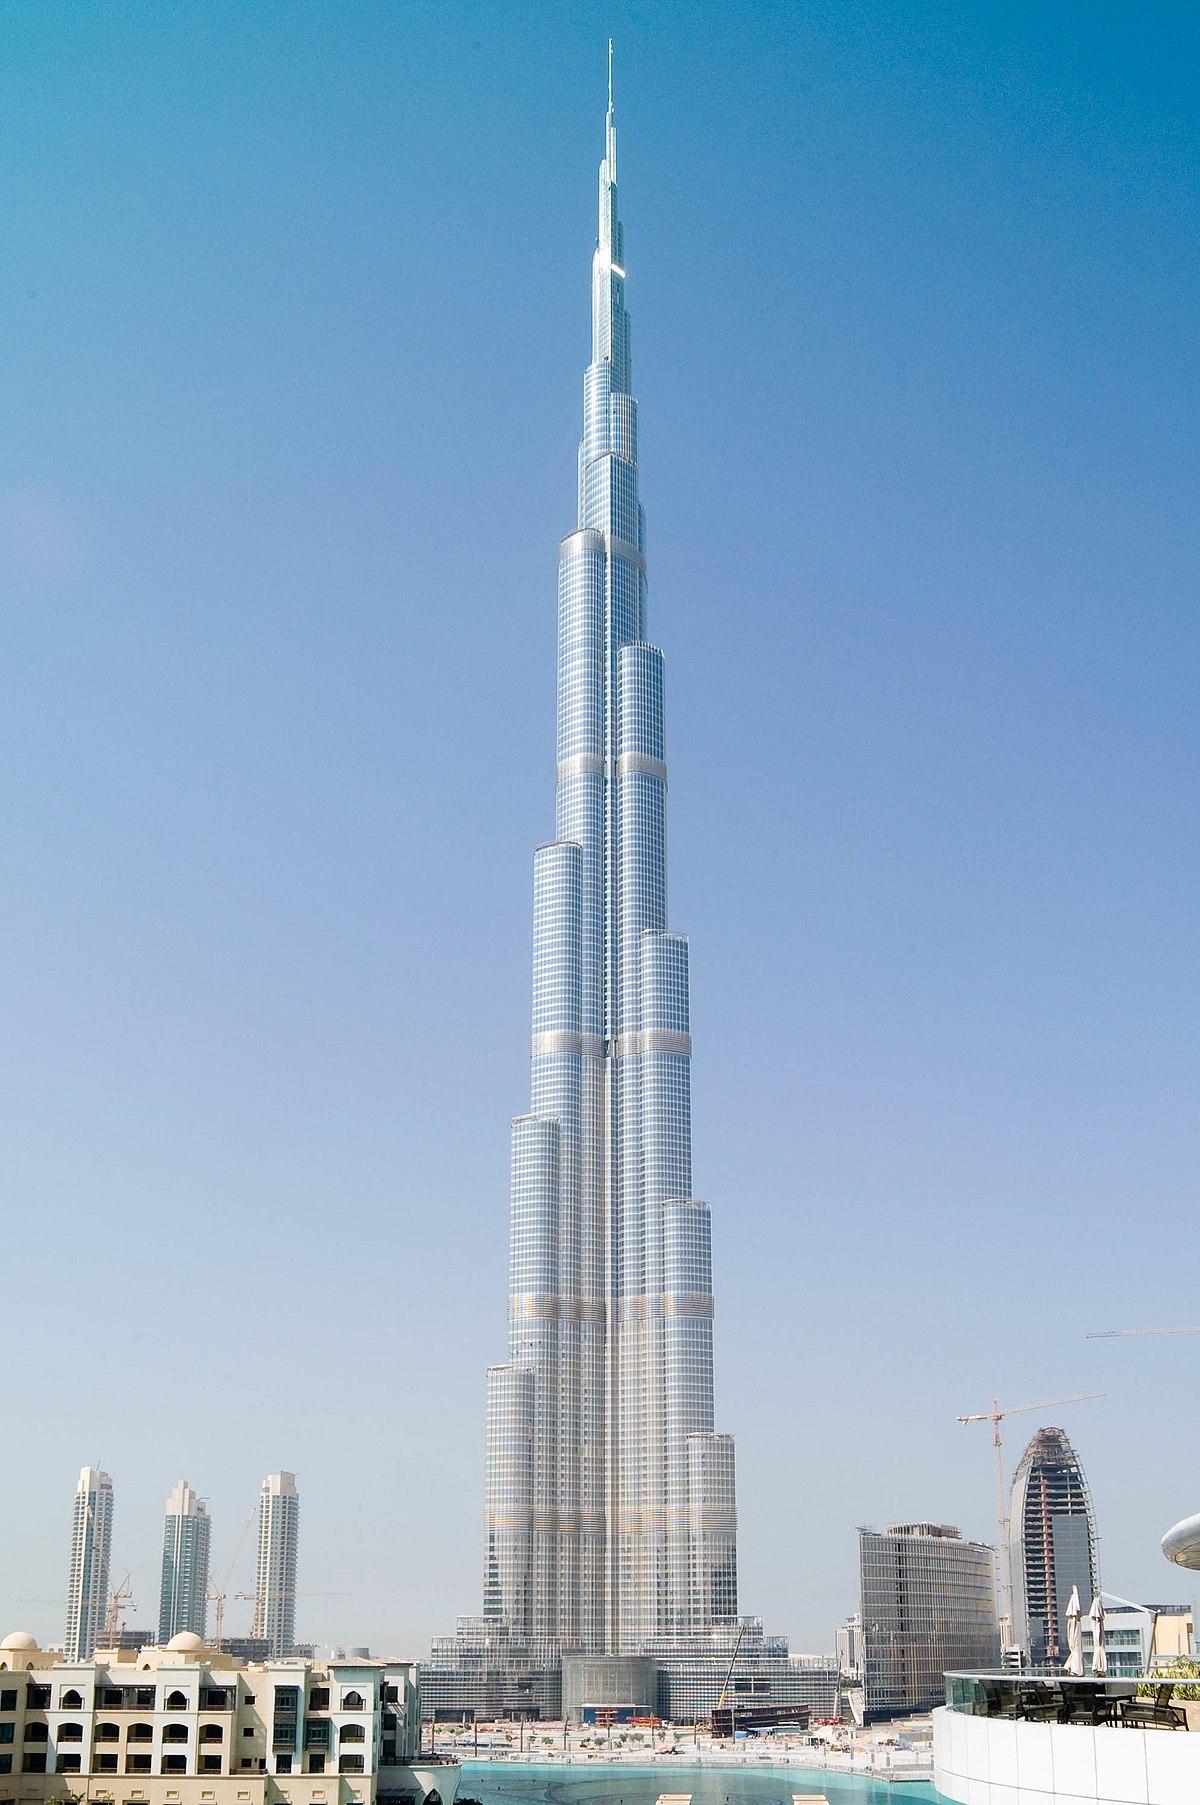 הבניין הגבוה בעולם